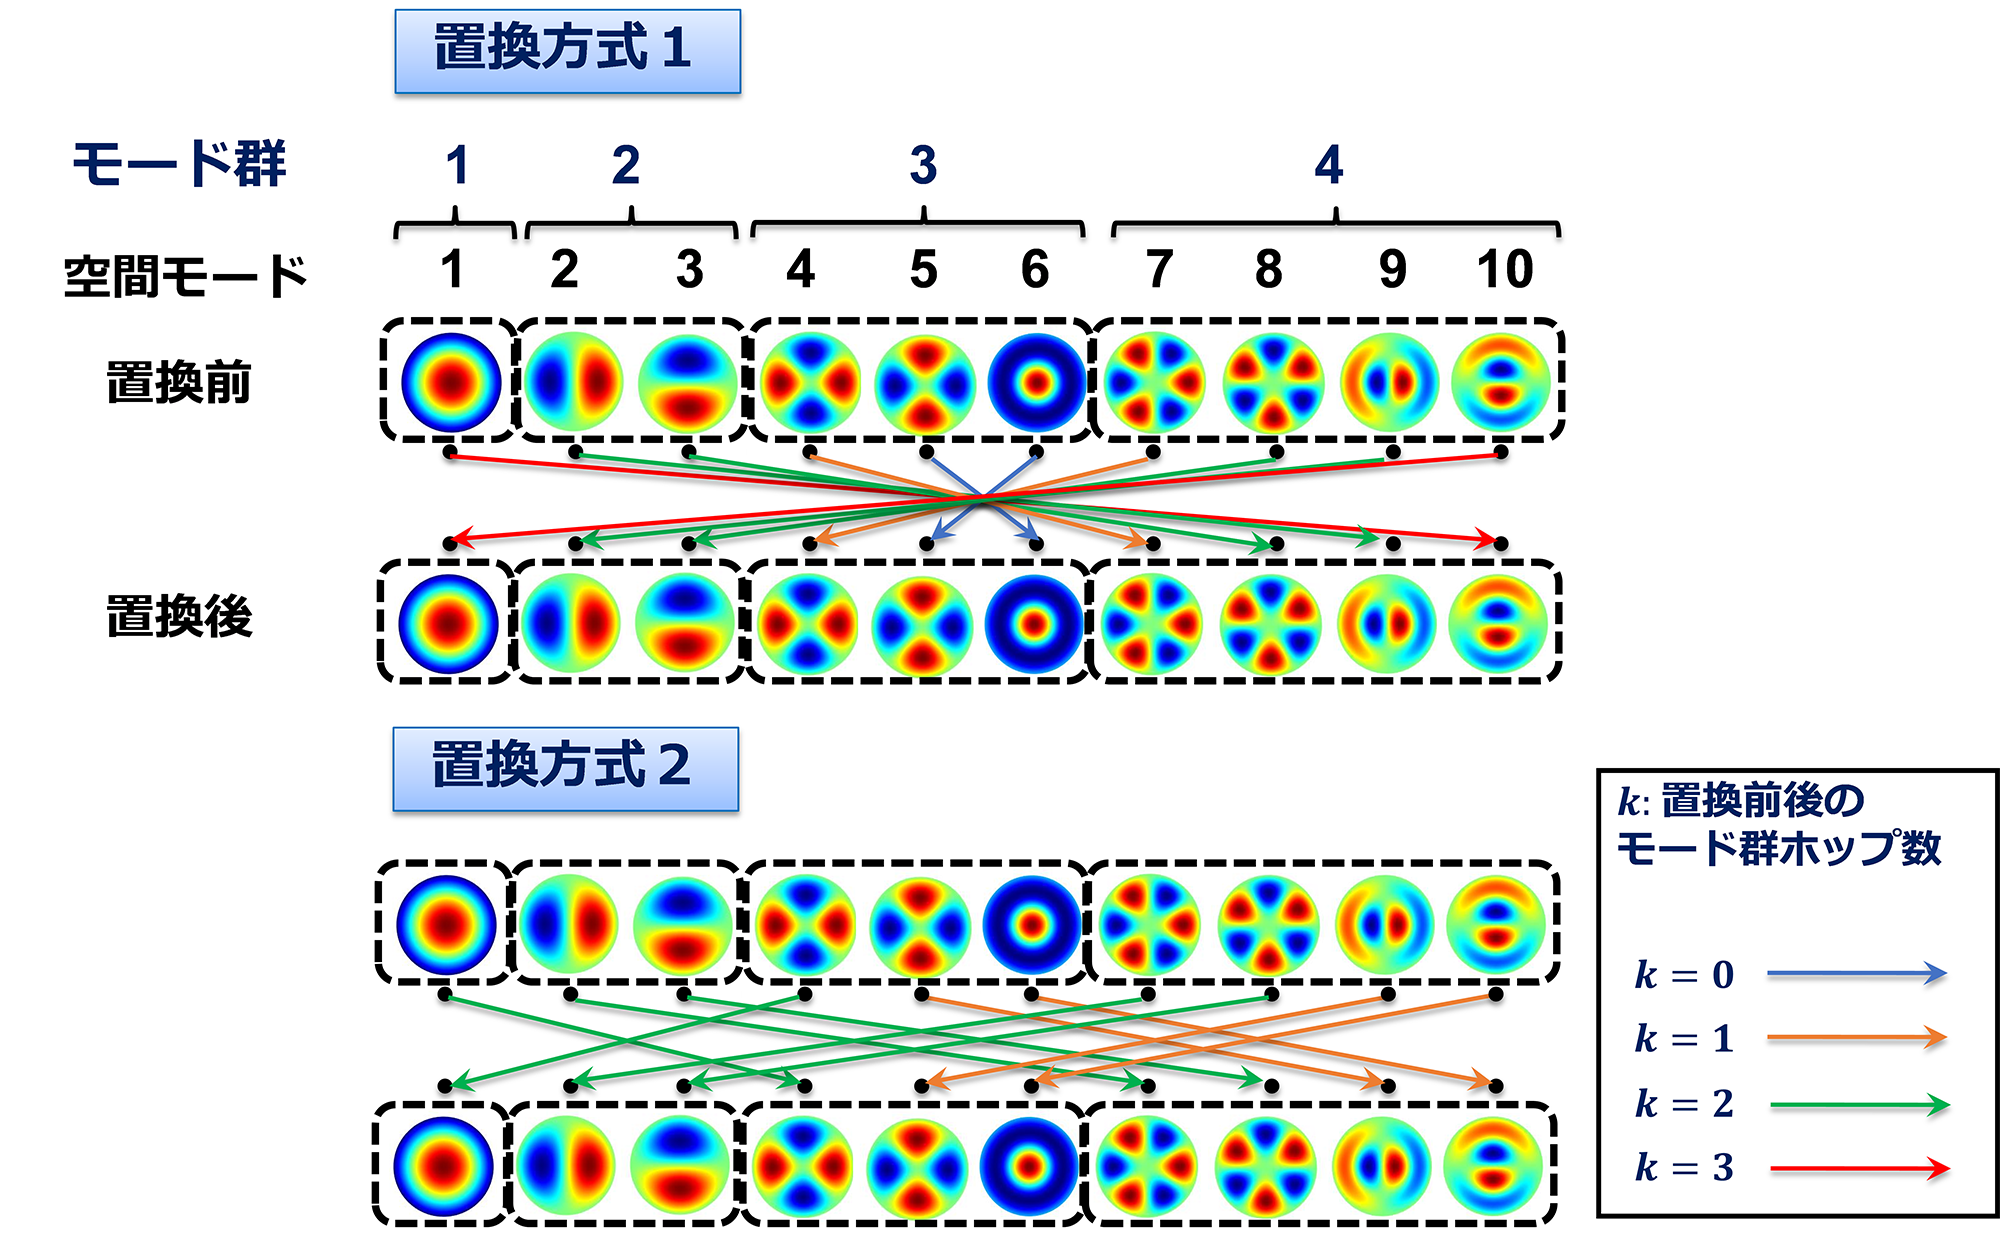 図3 拡張巡回モード群置換技術における置換方式の比較